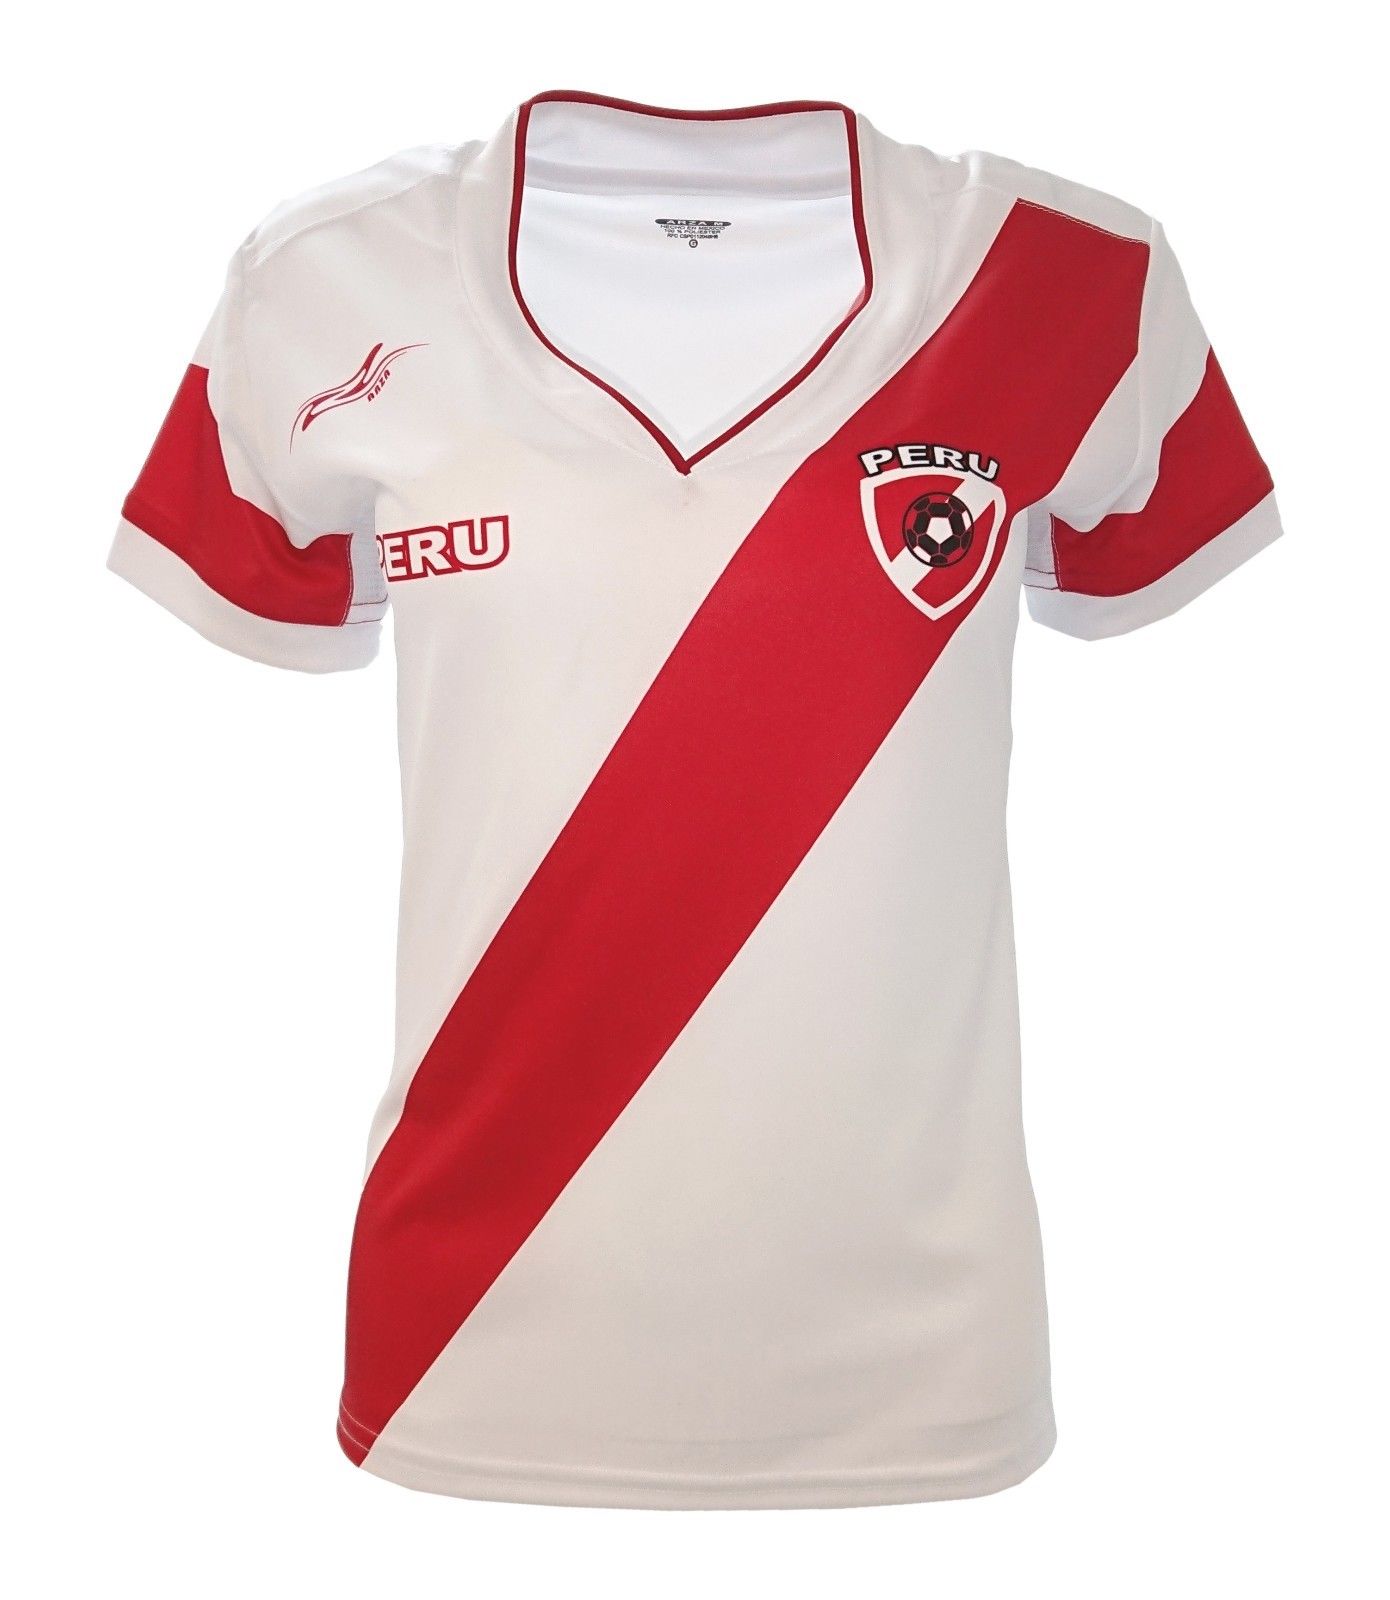 peru women's soccer jersey